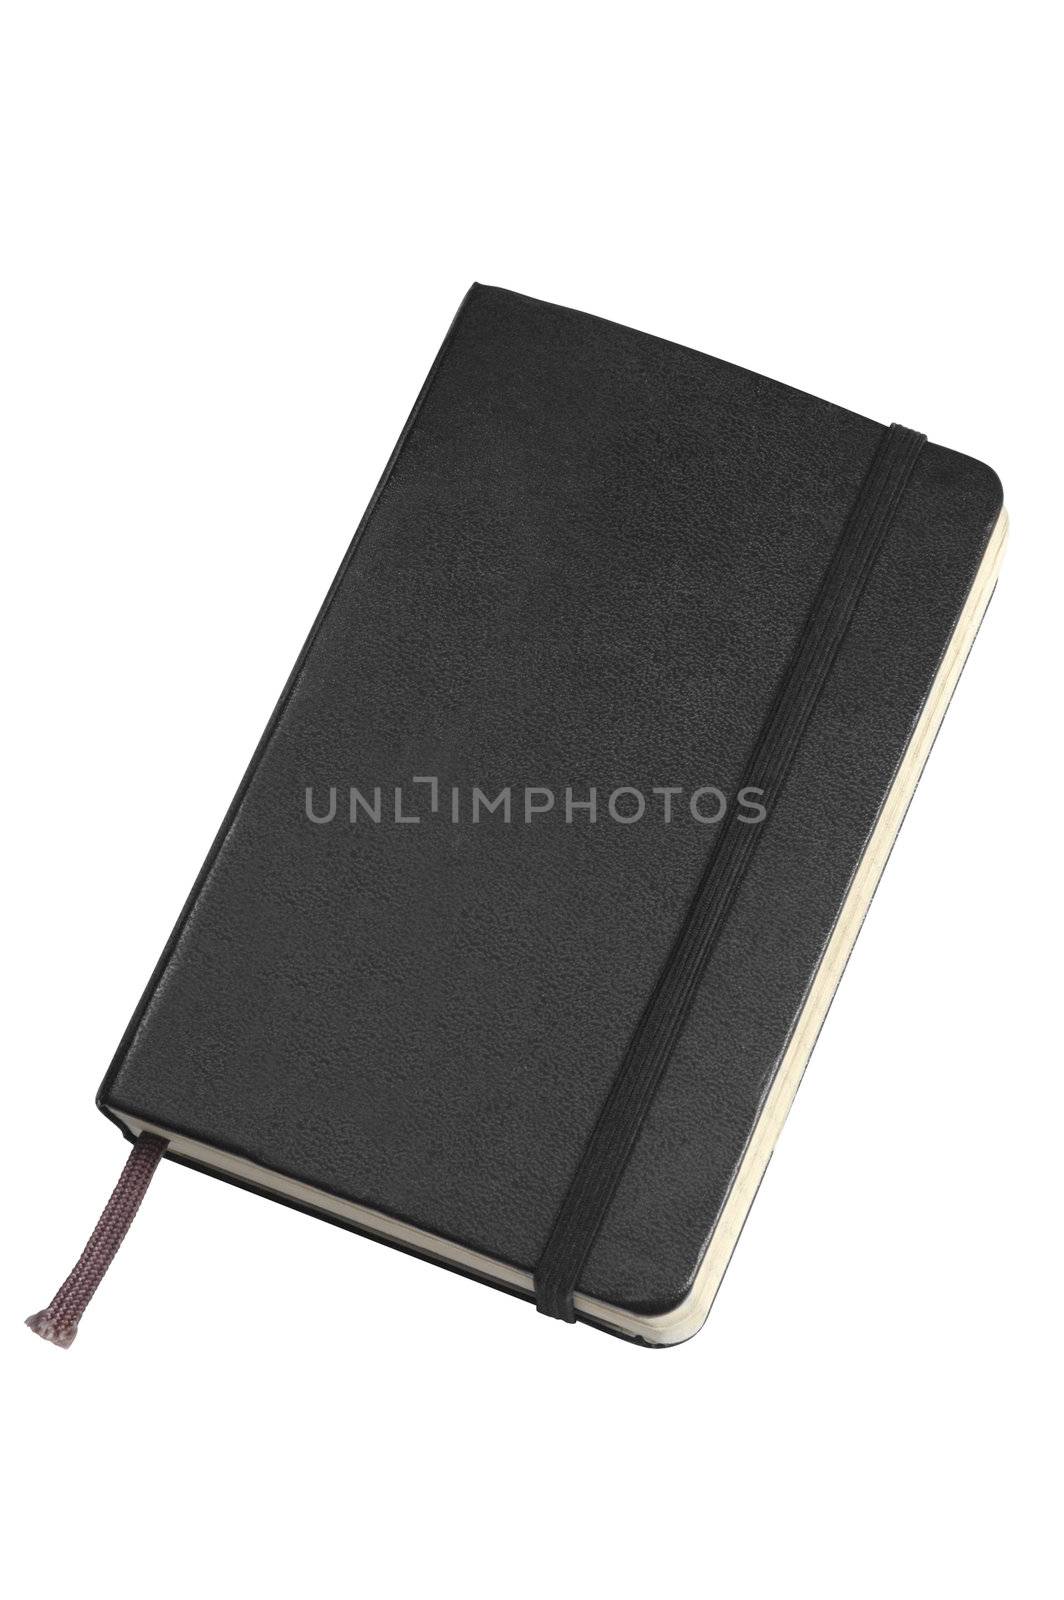 Black pocket sized journal on white